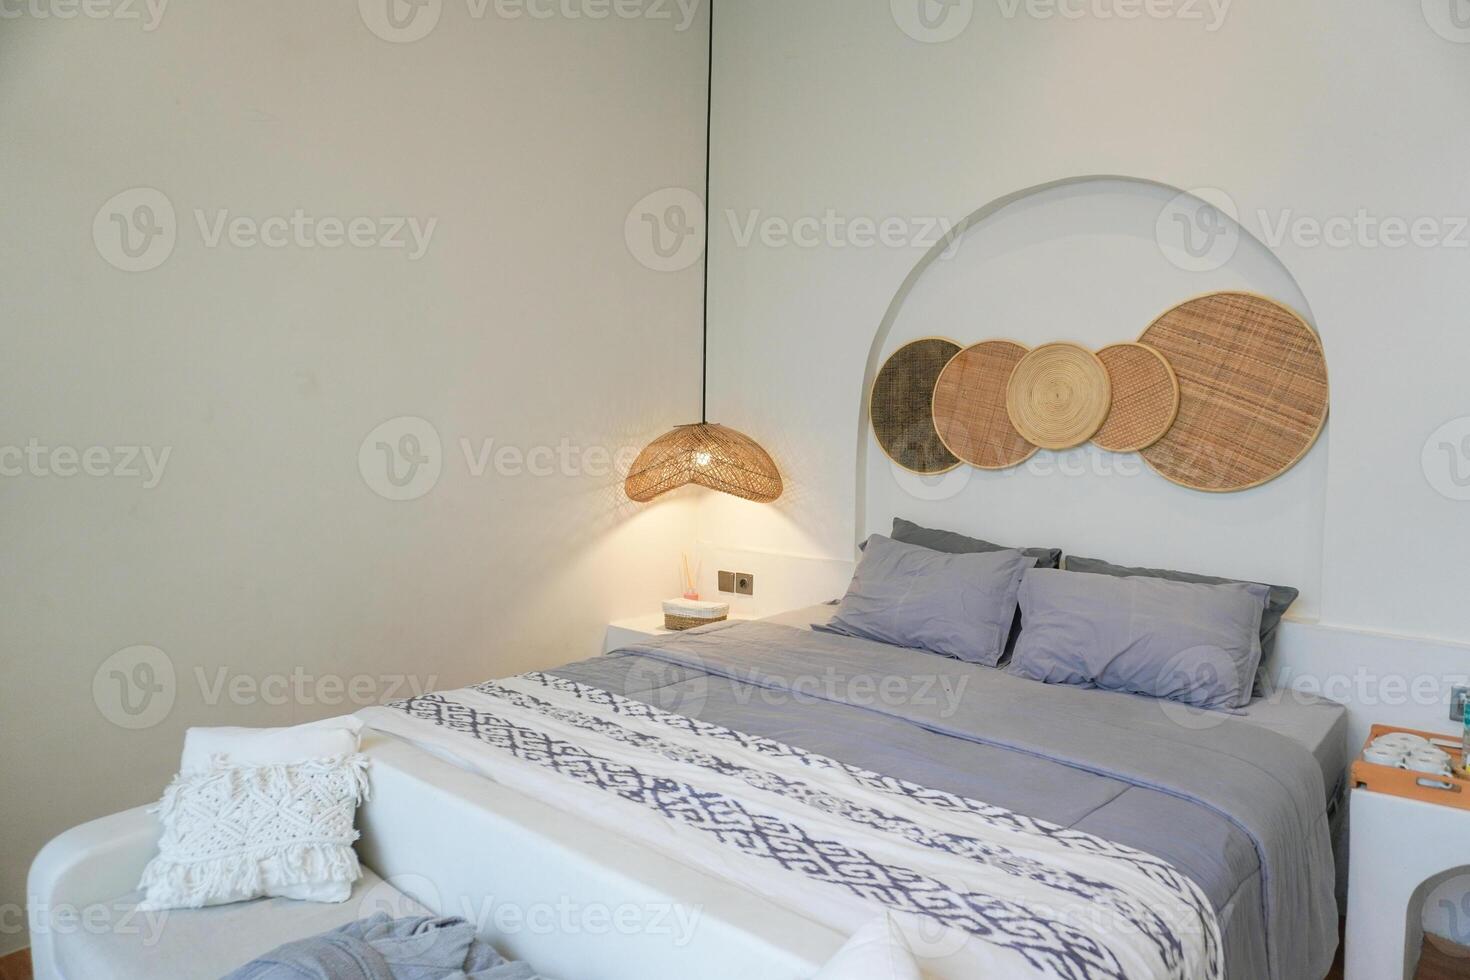 lussuoso villa Camera da letto con confortevole re dimensione letto e grigio fogli, malacca ornamenti su leggero grigio parete. concetto per interno, architettura e stile di vita. foto